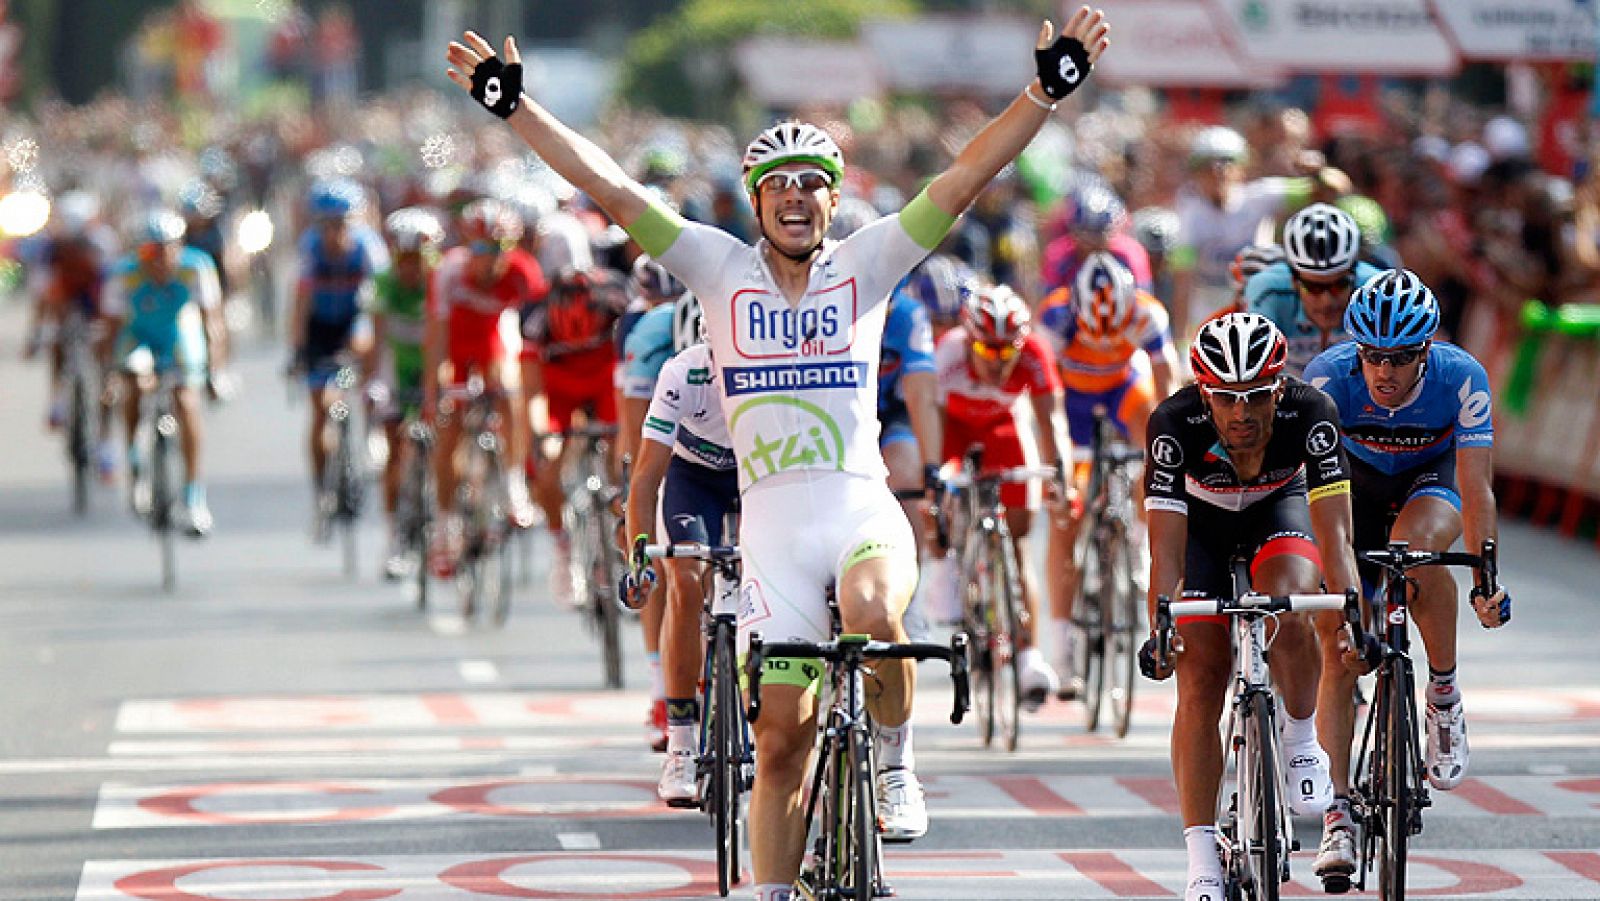 El alemán John Degenkolb ha conseguido en las calles de Madrid alzarse con su quinto triunfo parcial en esta Vuelta ciclista a España 2012. Alberto Contador ha entrado también con los brazos en alto ya que se apunta su segunda Vuelta.